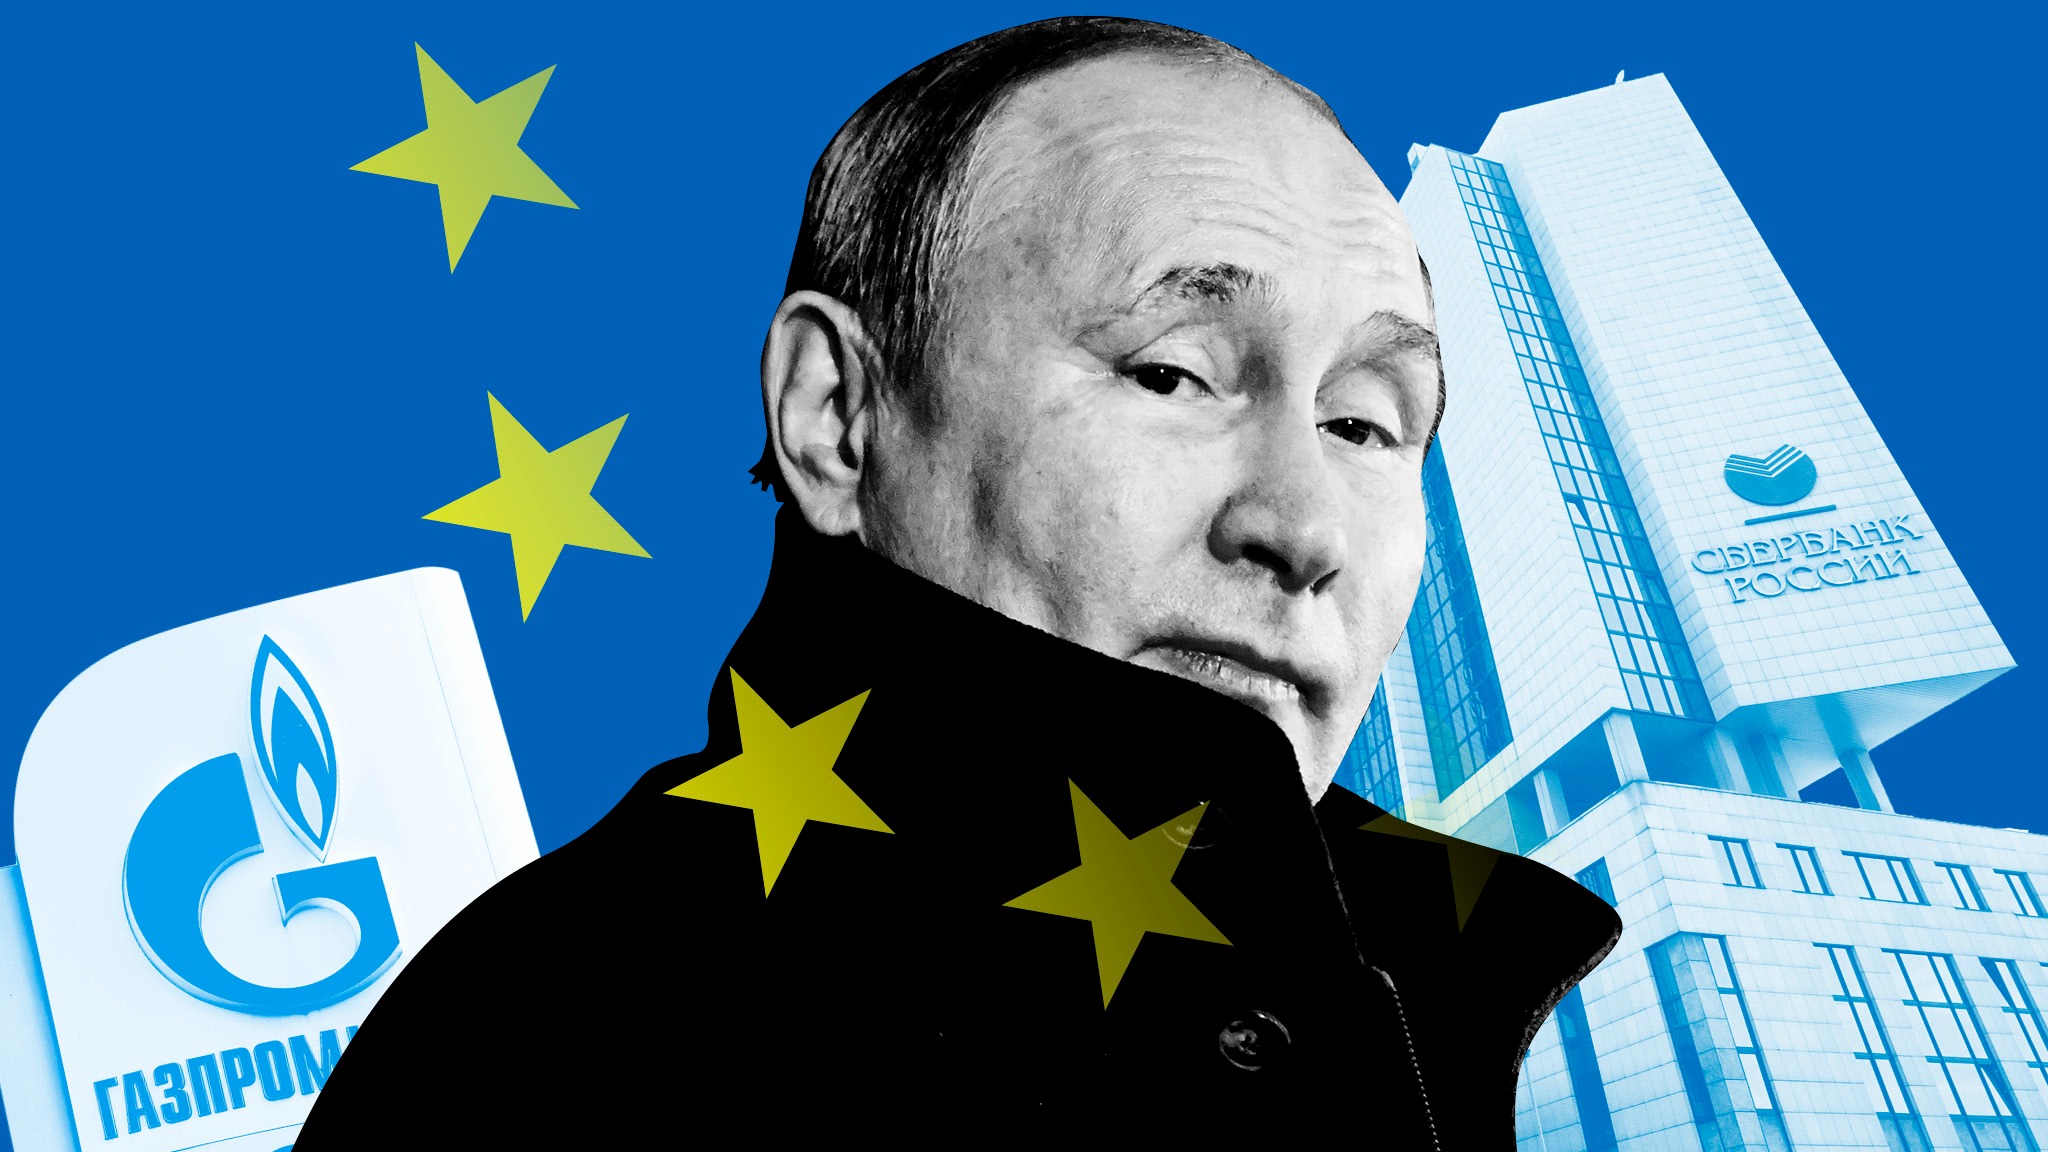 Paket Sanksi Kesembilan UE, Kemenlu Rusia: Ini akan Memperburuk Masalah Sosial dan Ekonomi UE Sendiri